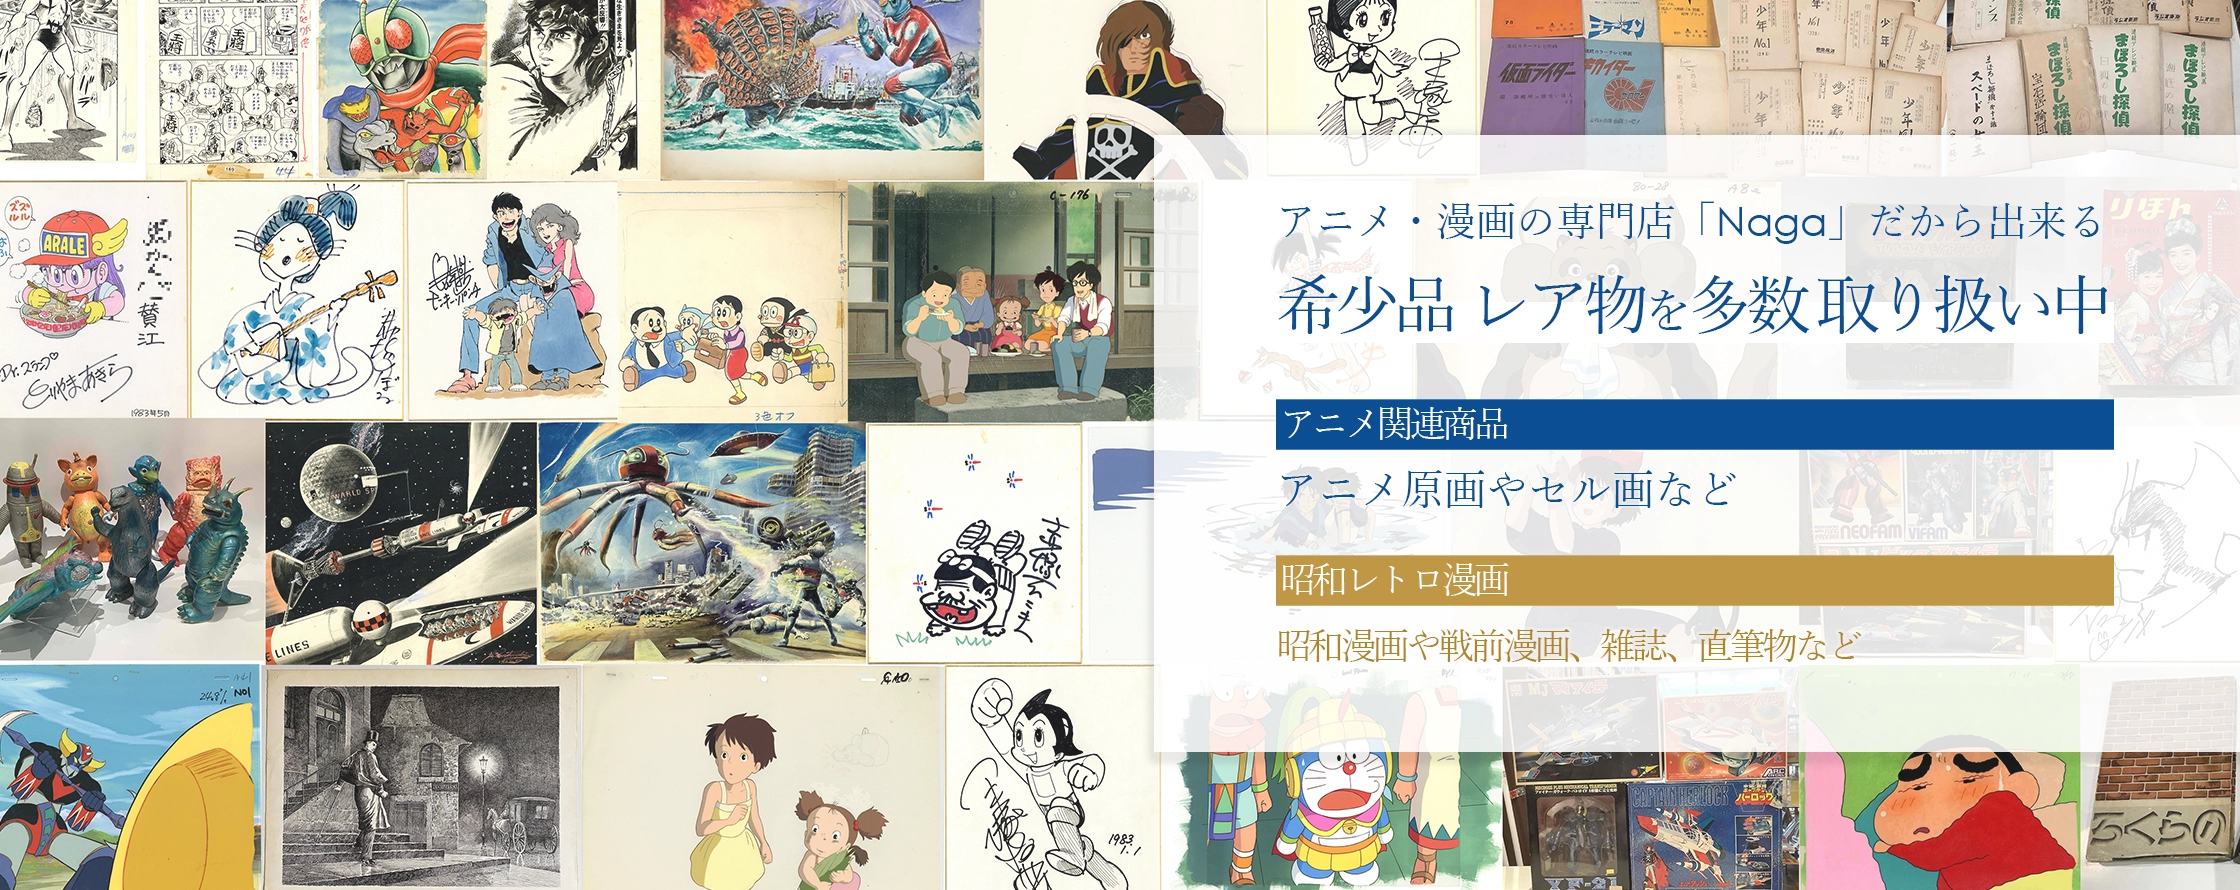 アニメ・漫画の専門店 Nagaだから出来るラインナップ。セル画や原画など、希少品、レア物を多数 取り扱い中です。